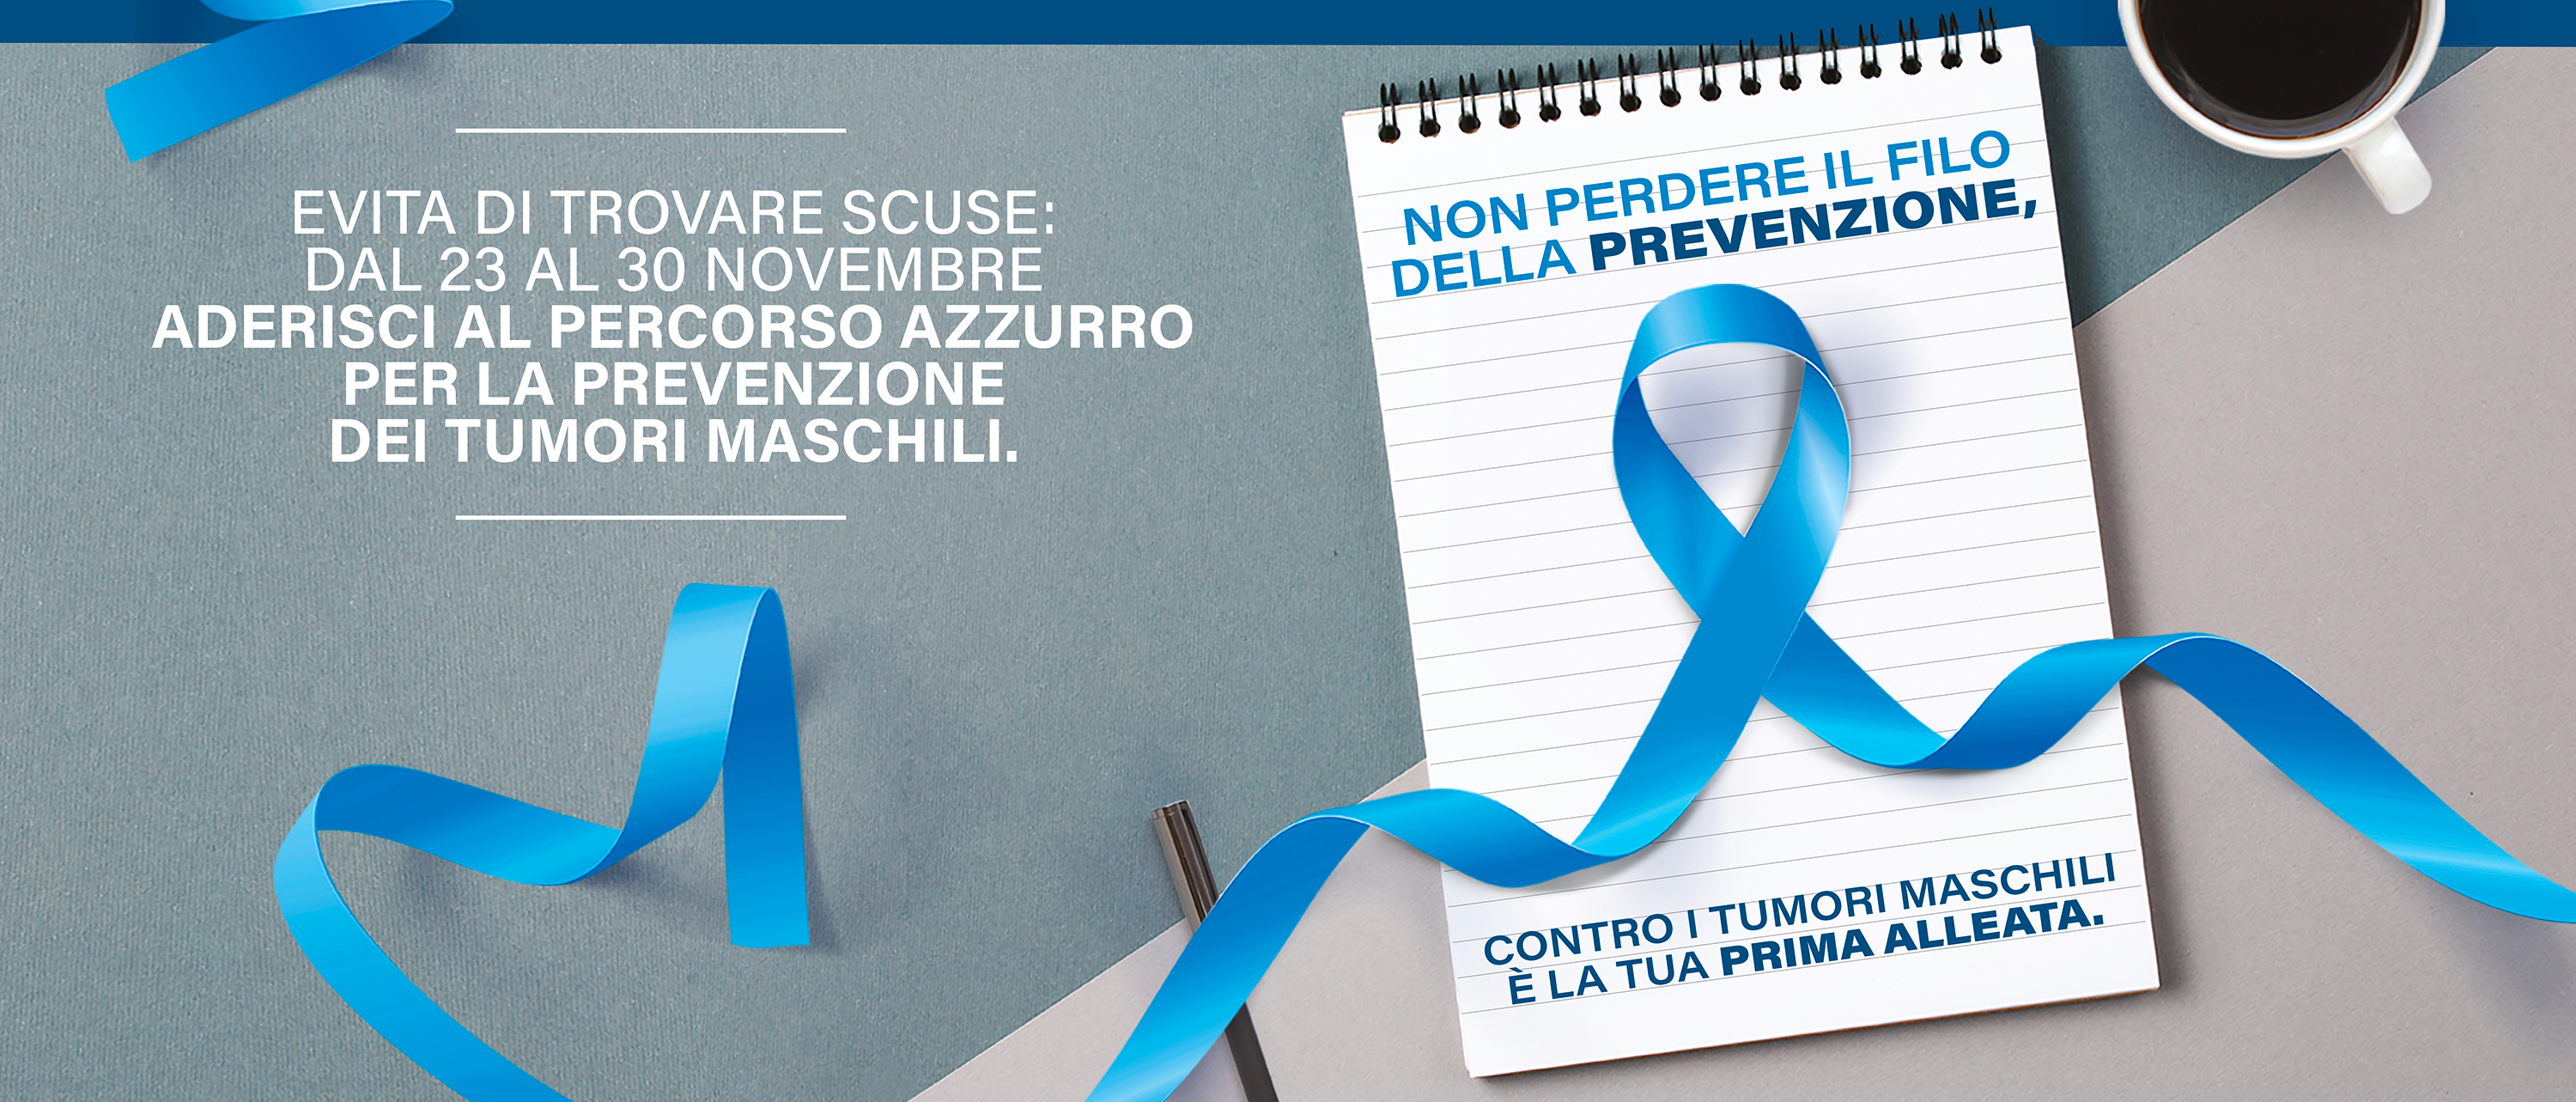 Evita di trovare scuse: dal 23 al 30 novembreaderisci al percorso azzurro per la prevenzione dei tumori maschili 